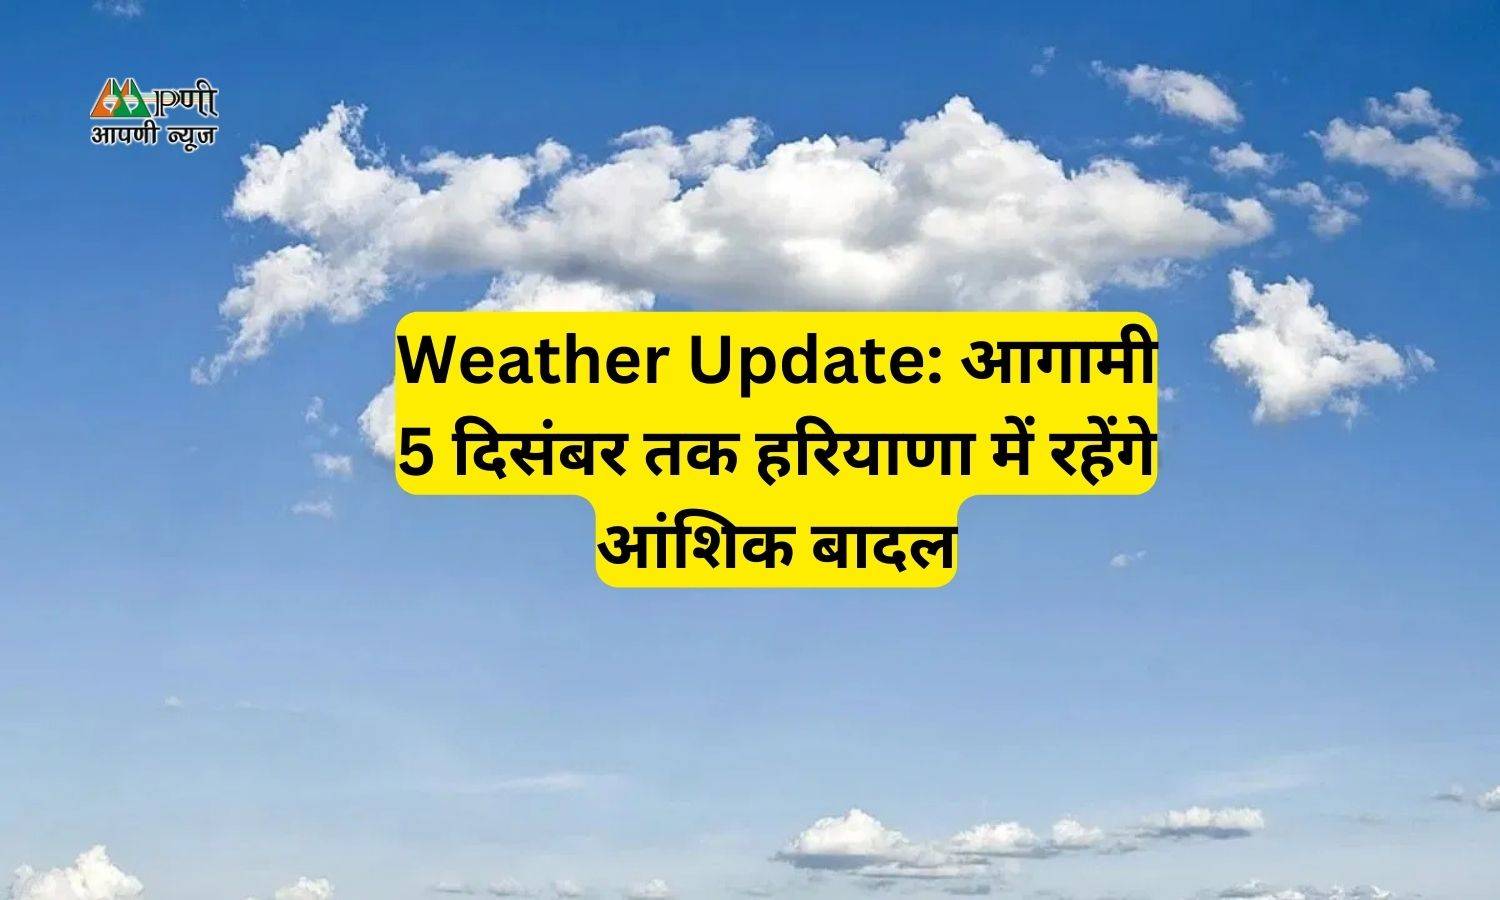 Weather Update: आगामी 5 दिसंबर तक हरियाणा में रहेंगे आंशिक बादल